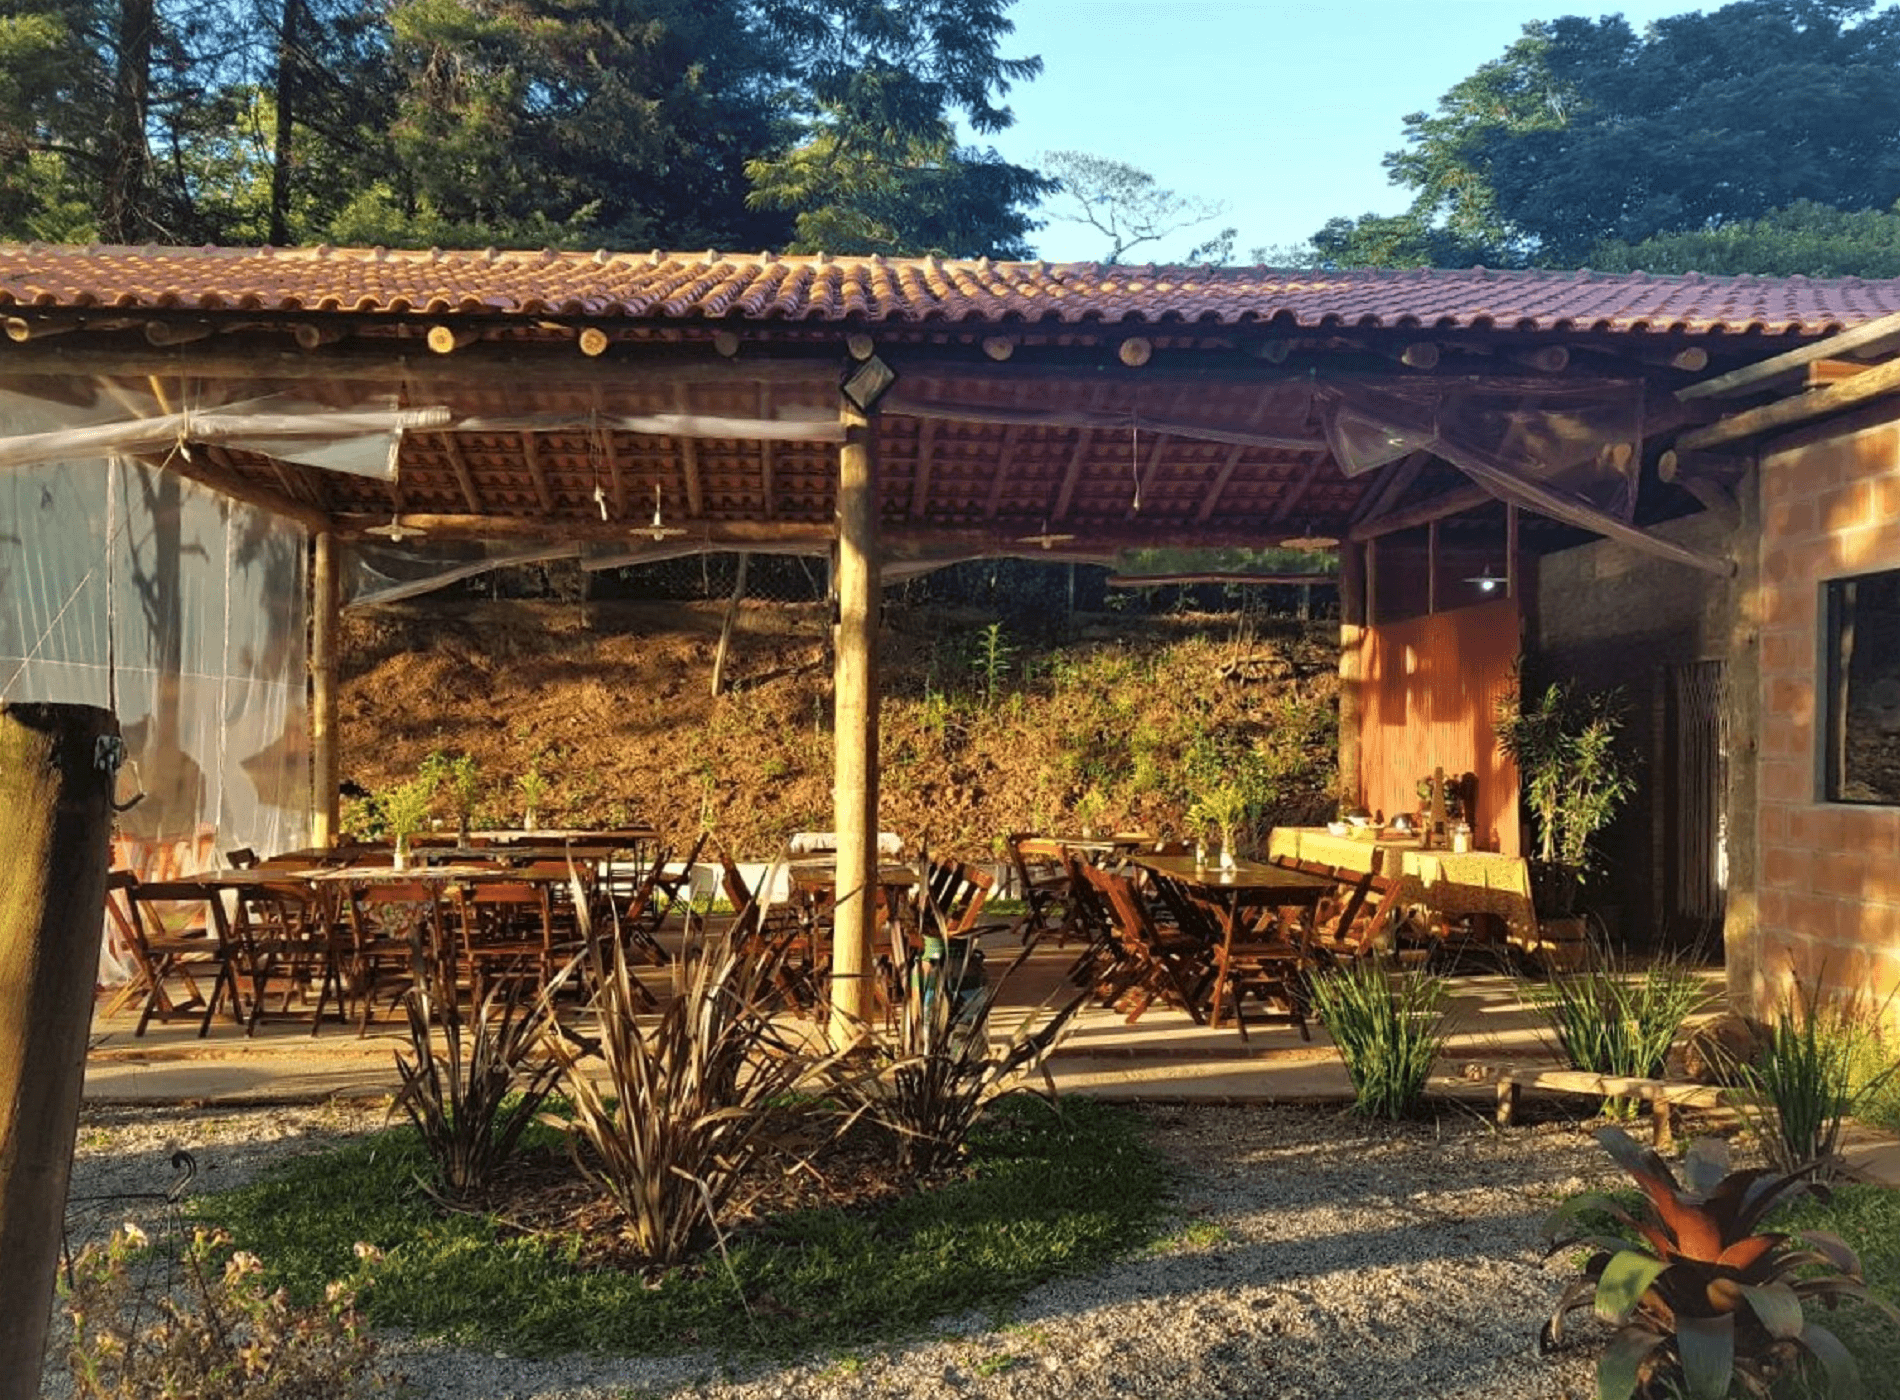 O restaurante com Estrutura de Madeira recebeu telhado aparente, com telha portuguesa vermelha. No Jardim o redário completa o projeto criando um delicioso espaço para o descanso após as refeições. Louveira – SP.